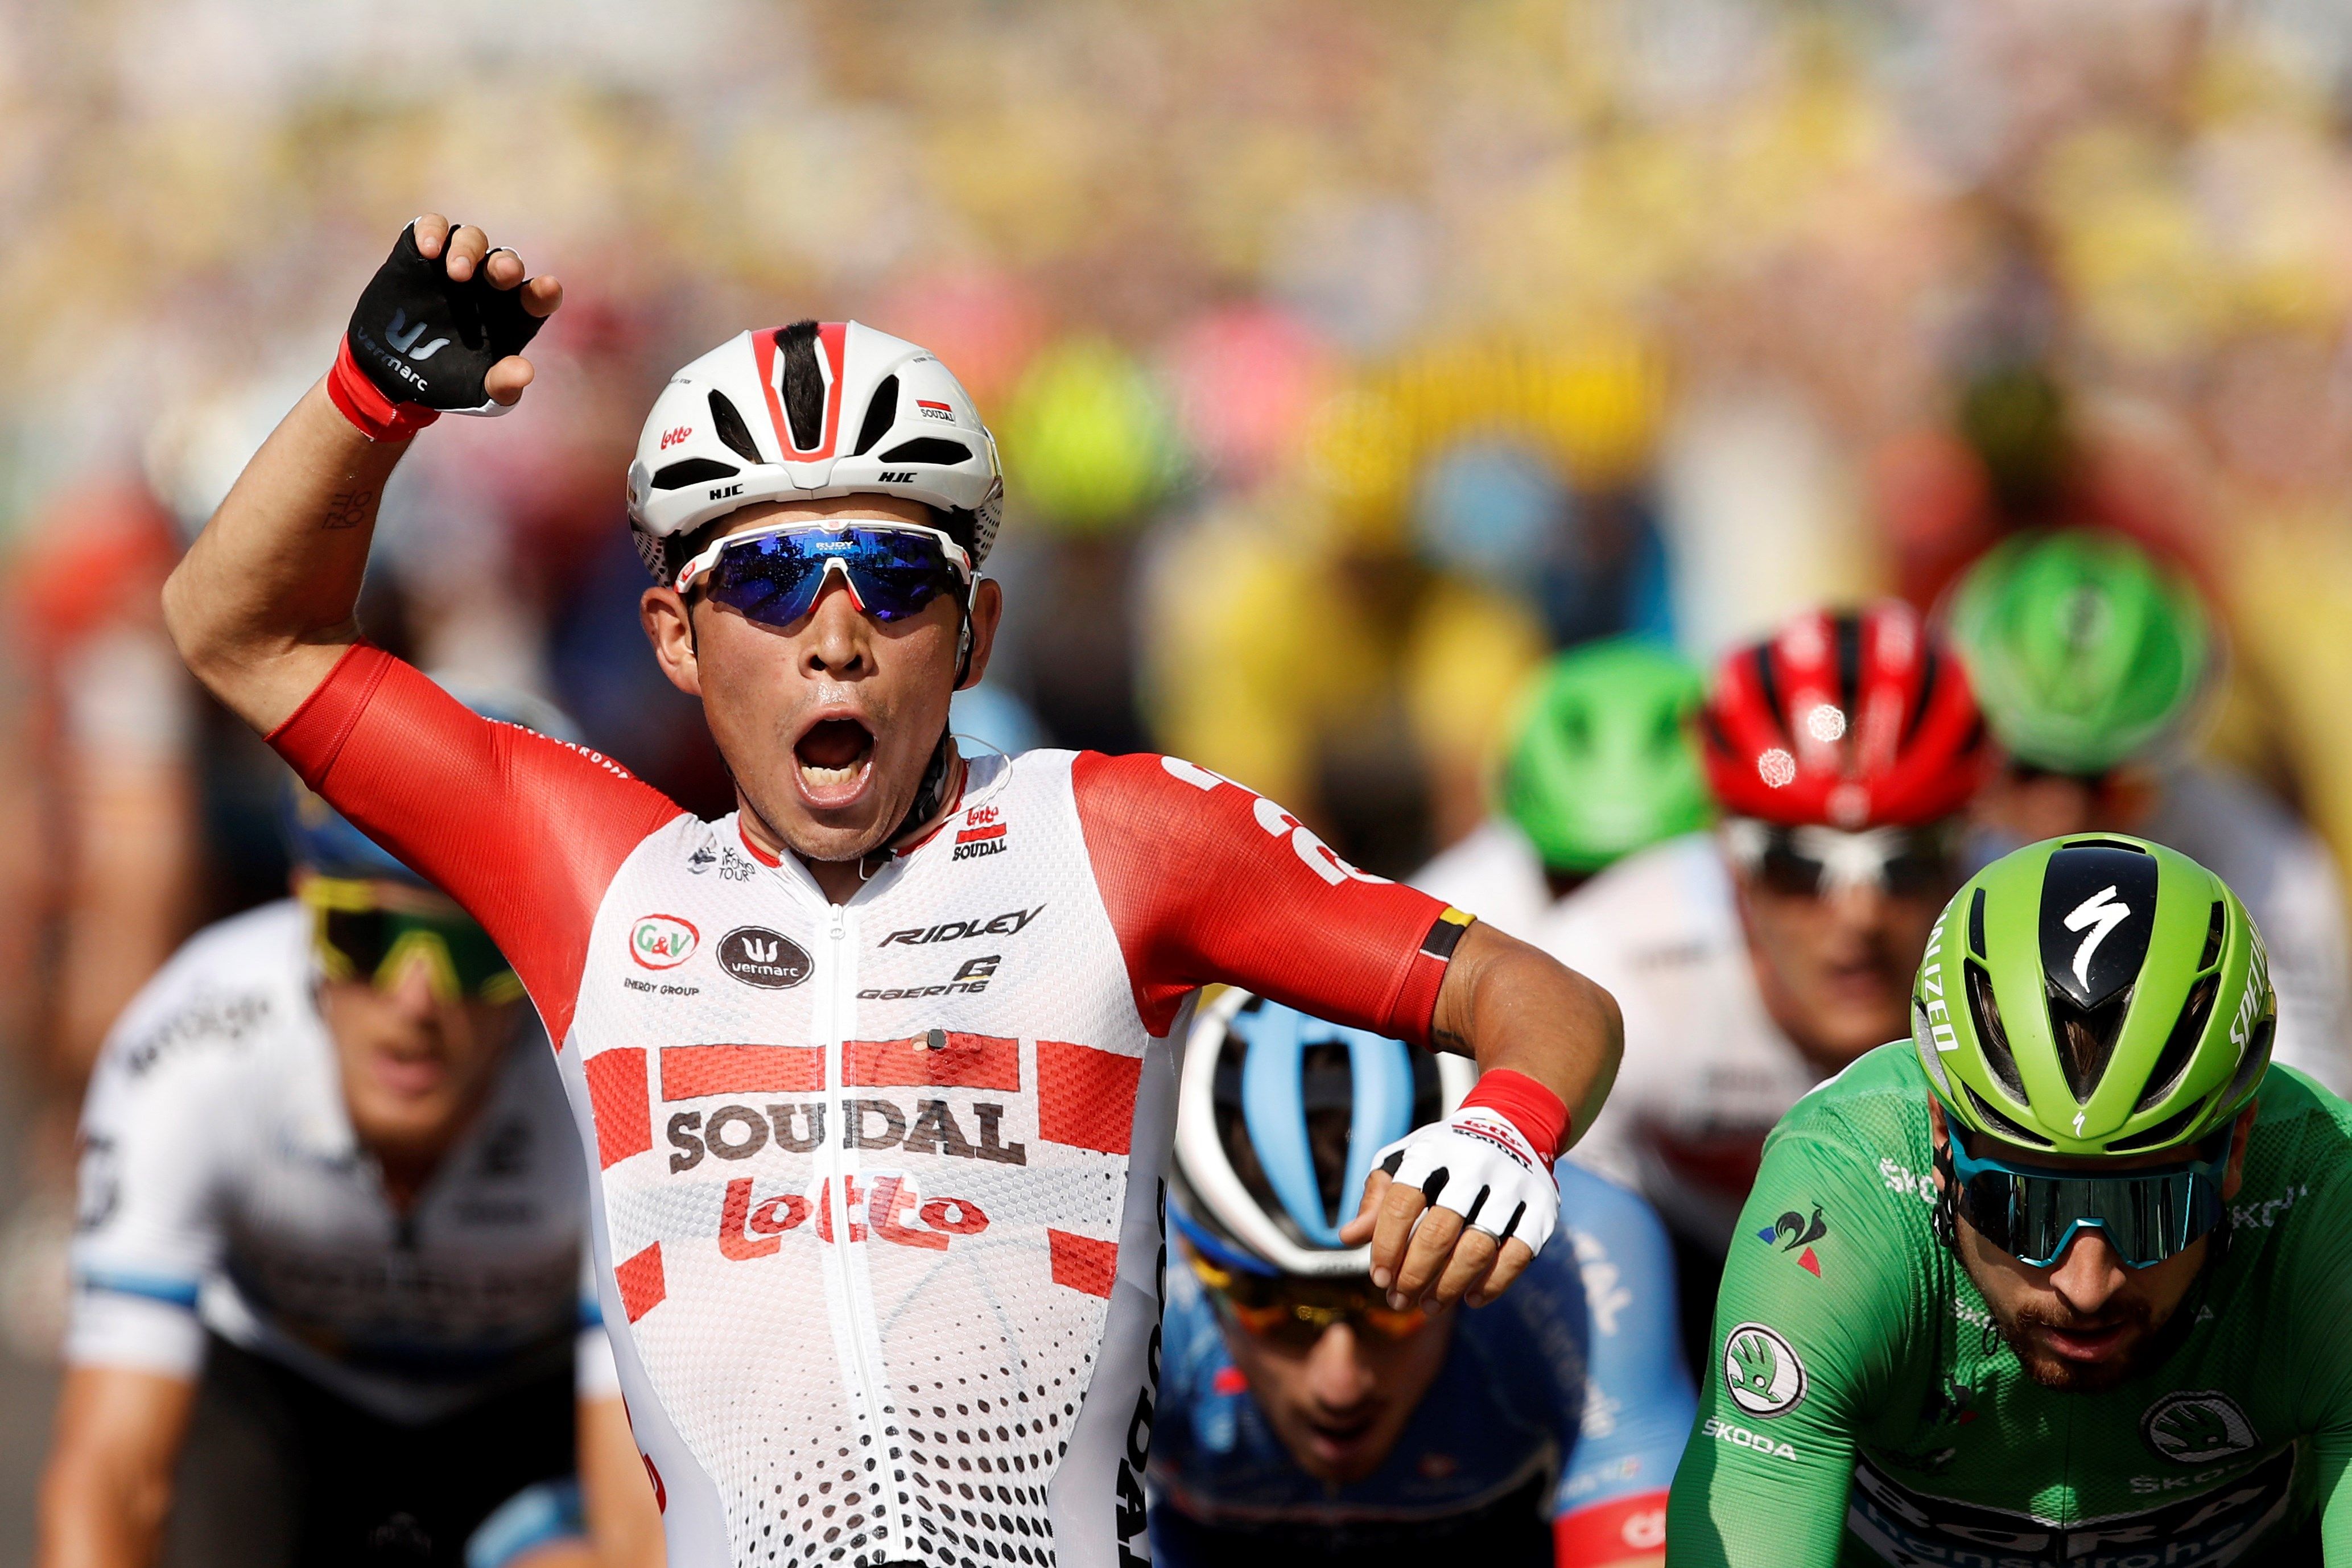 Ewan suma la segunda victoria en el Tour de Francia y Alaphilippe no se mueve del liderato